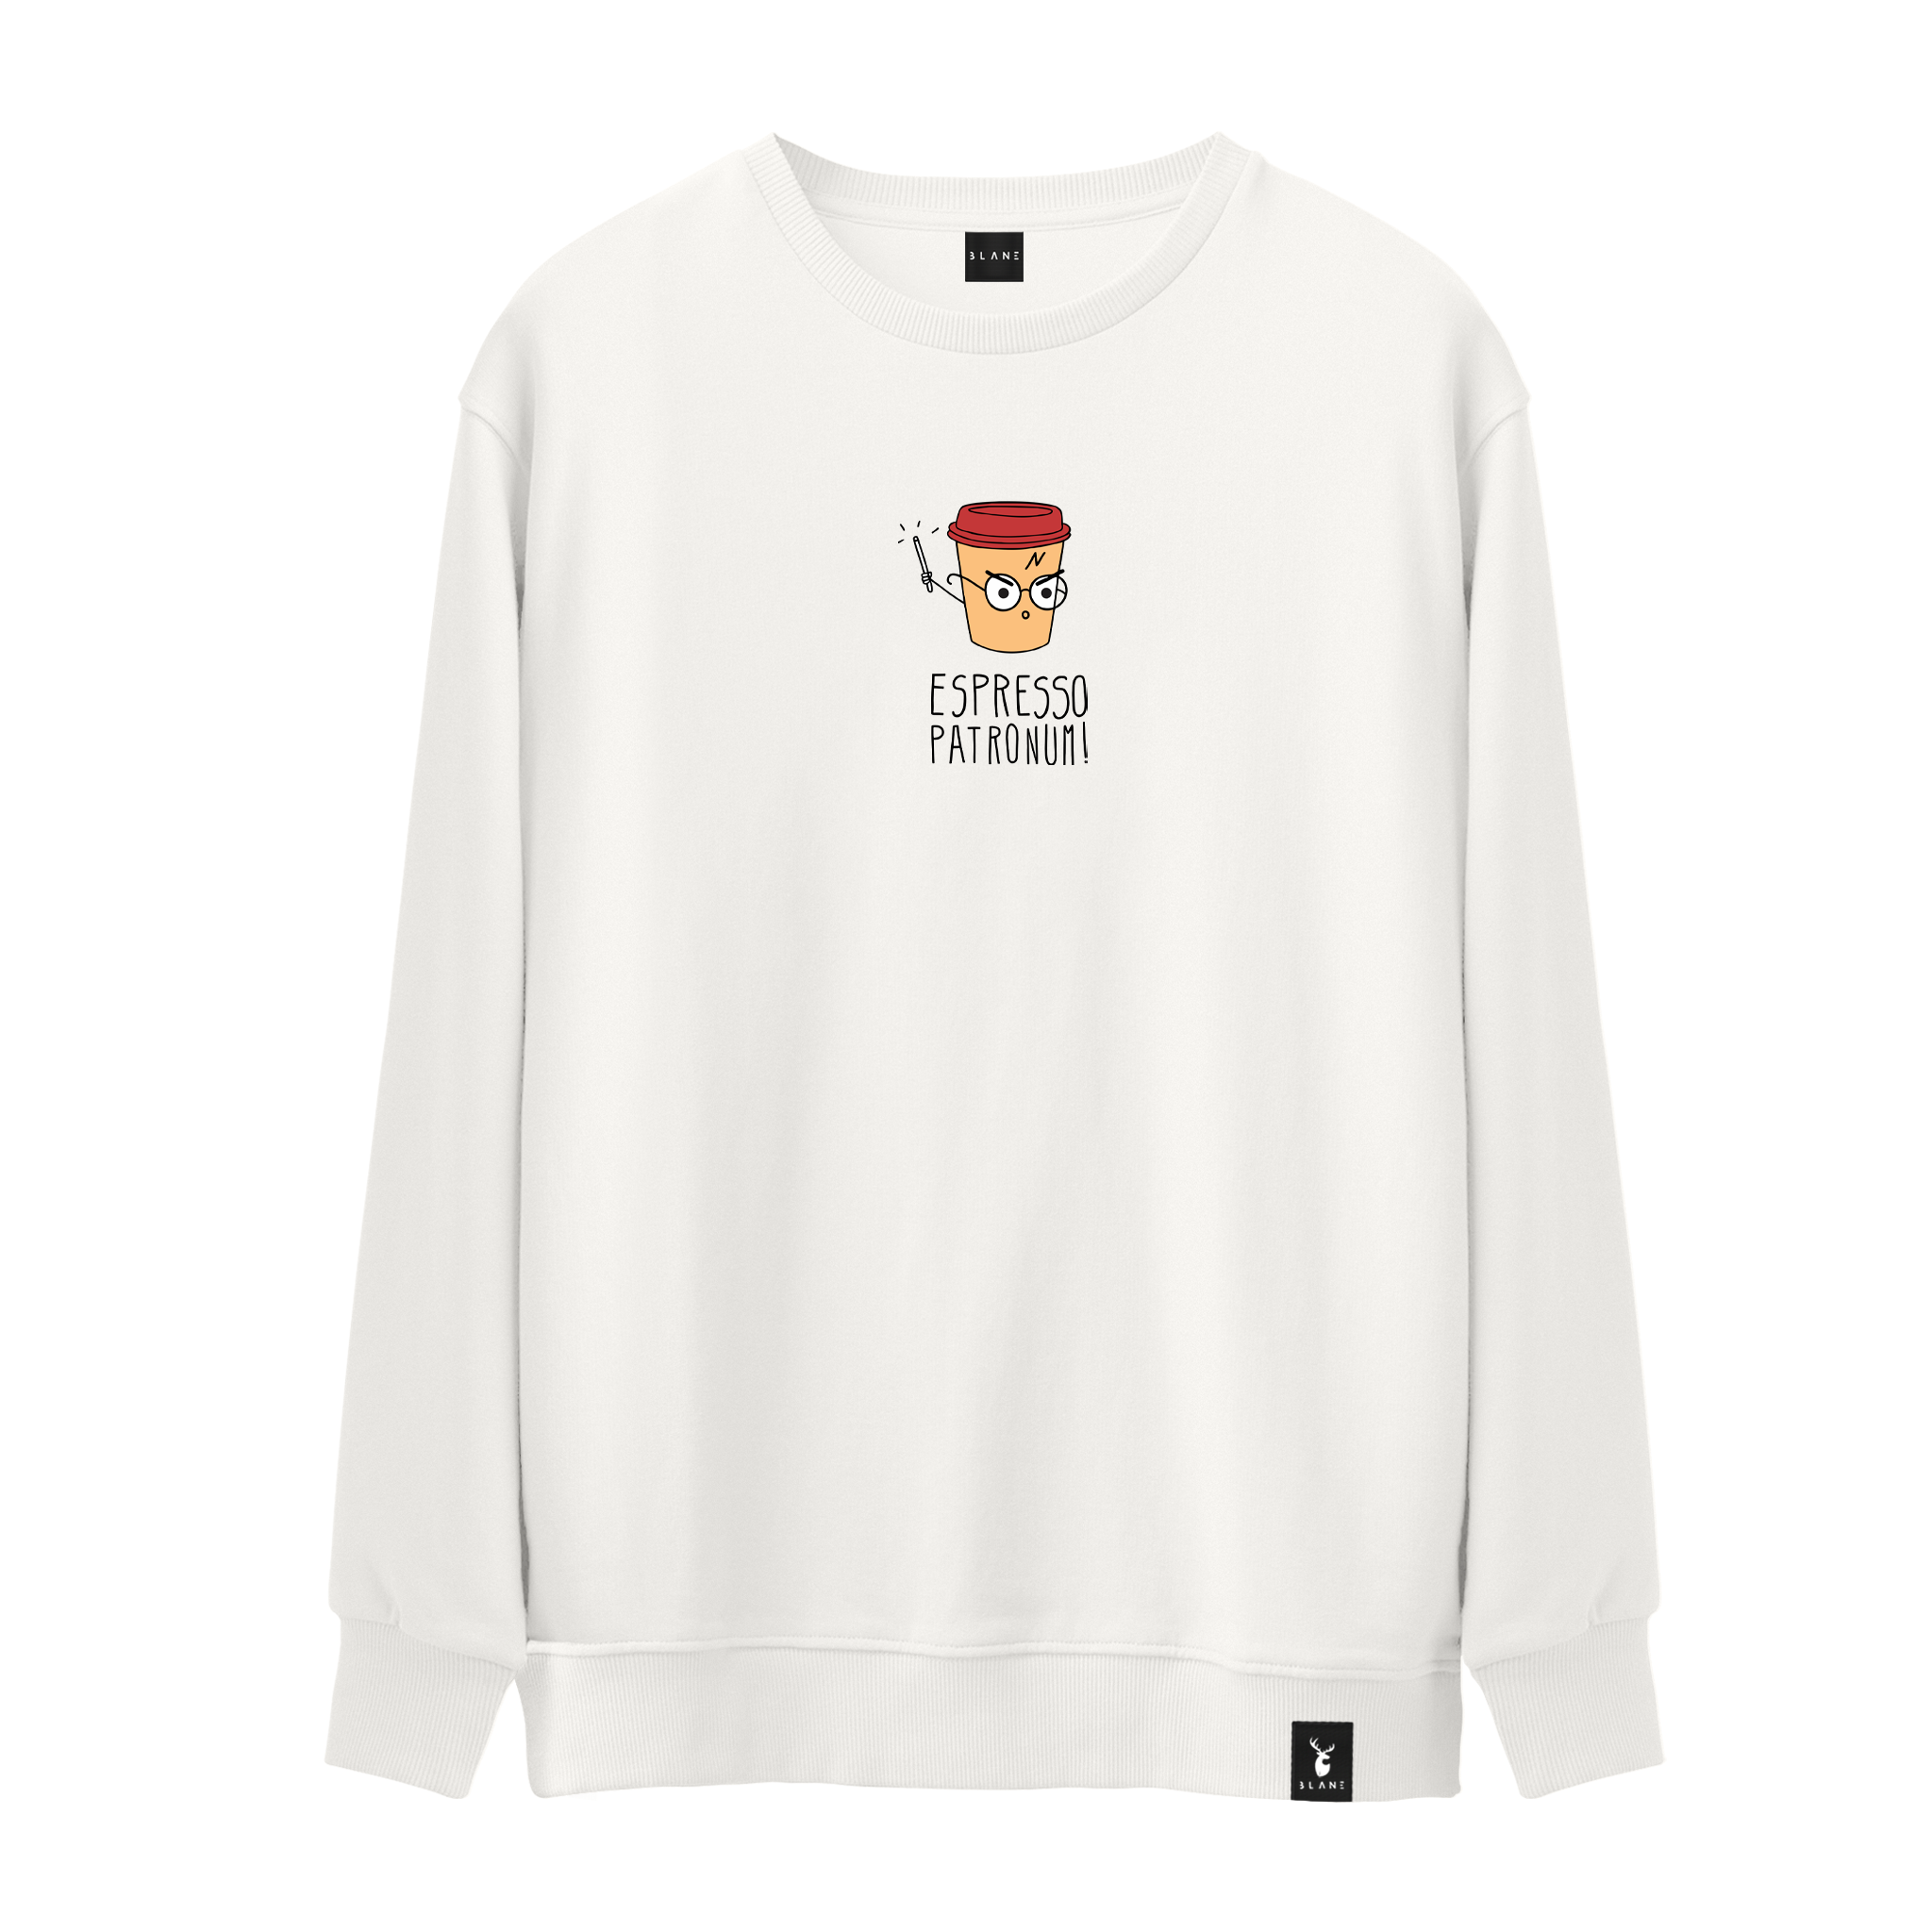 Espresso Patronum - Sweatshirt